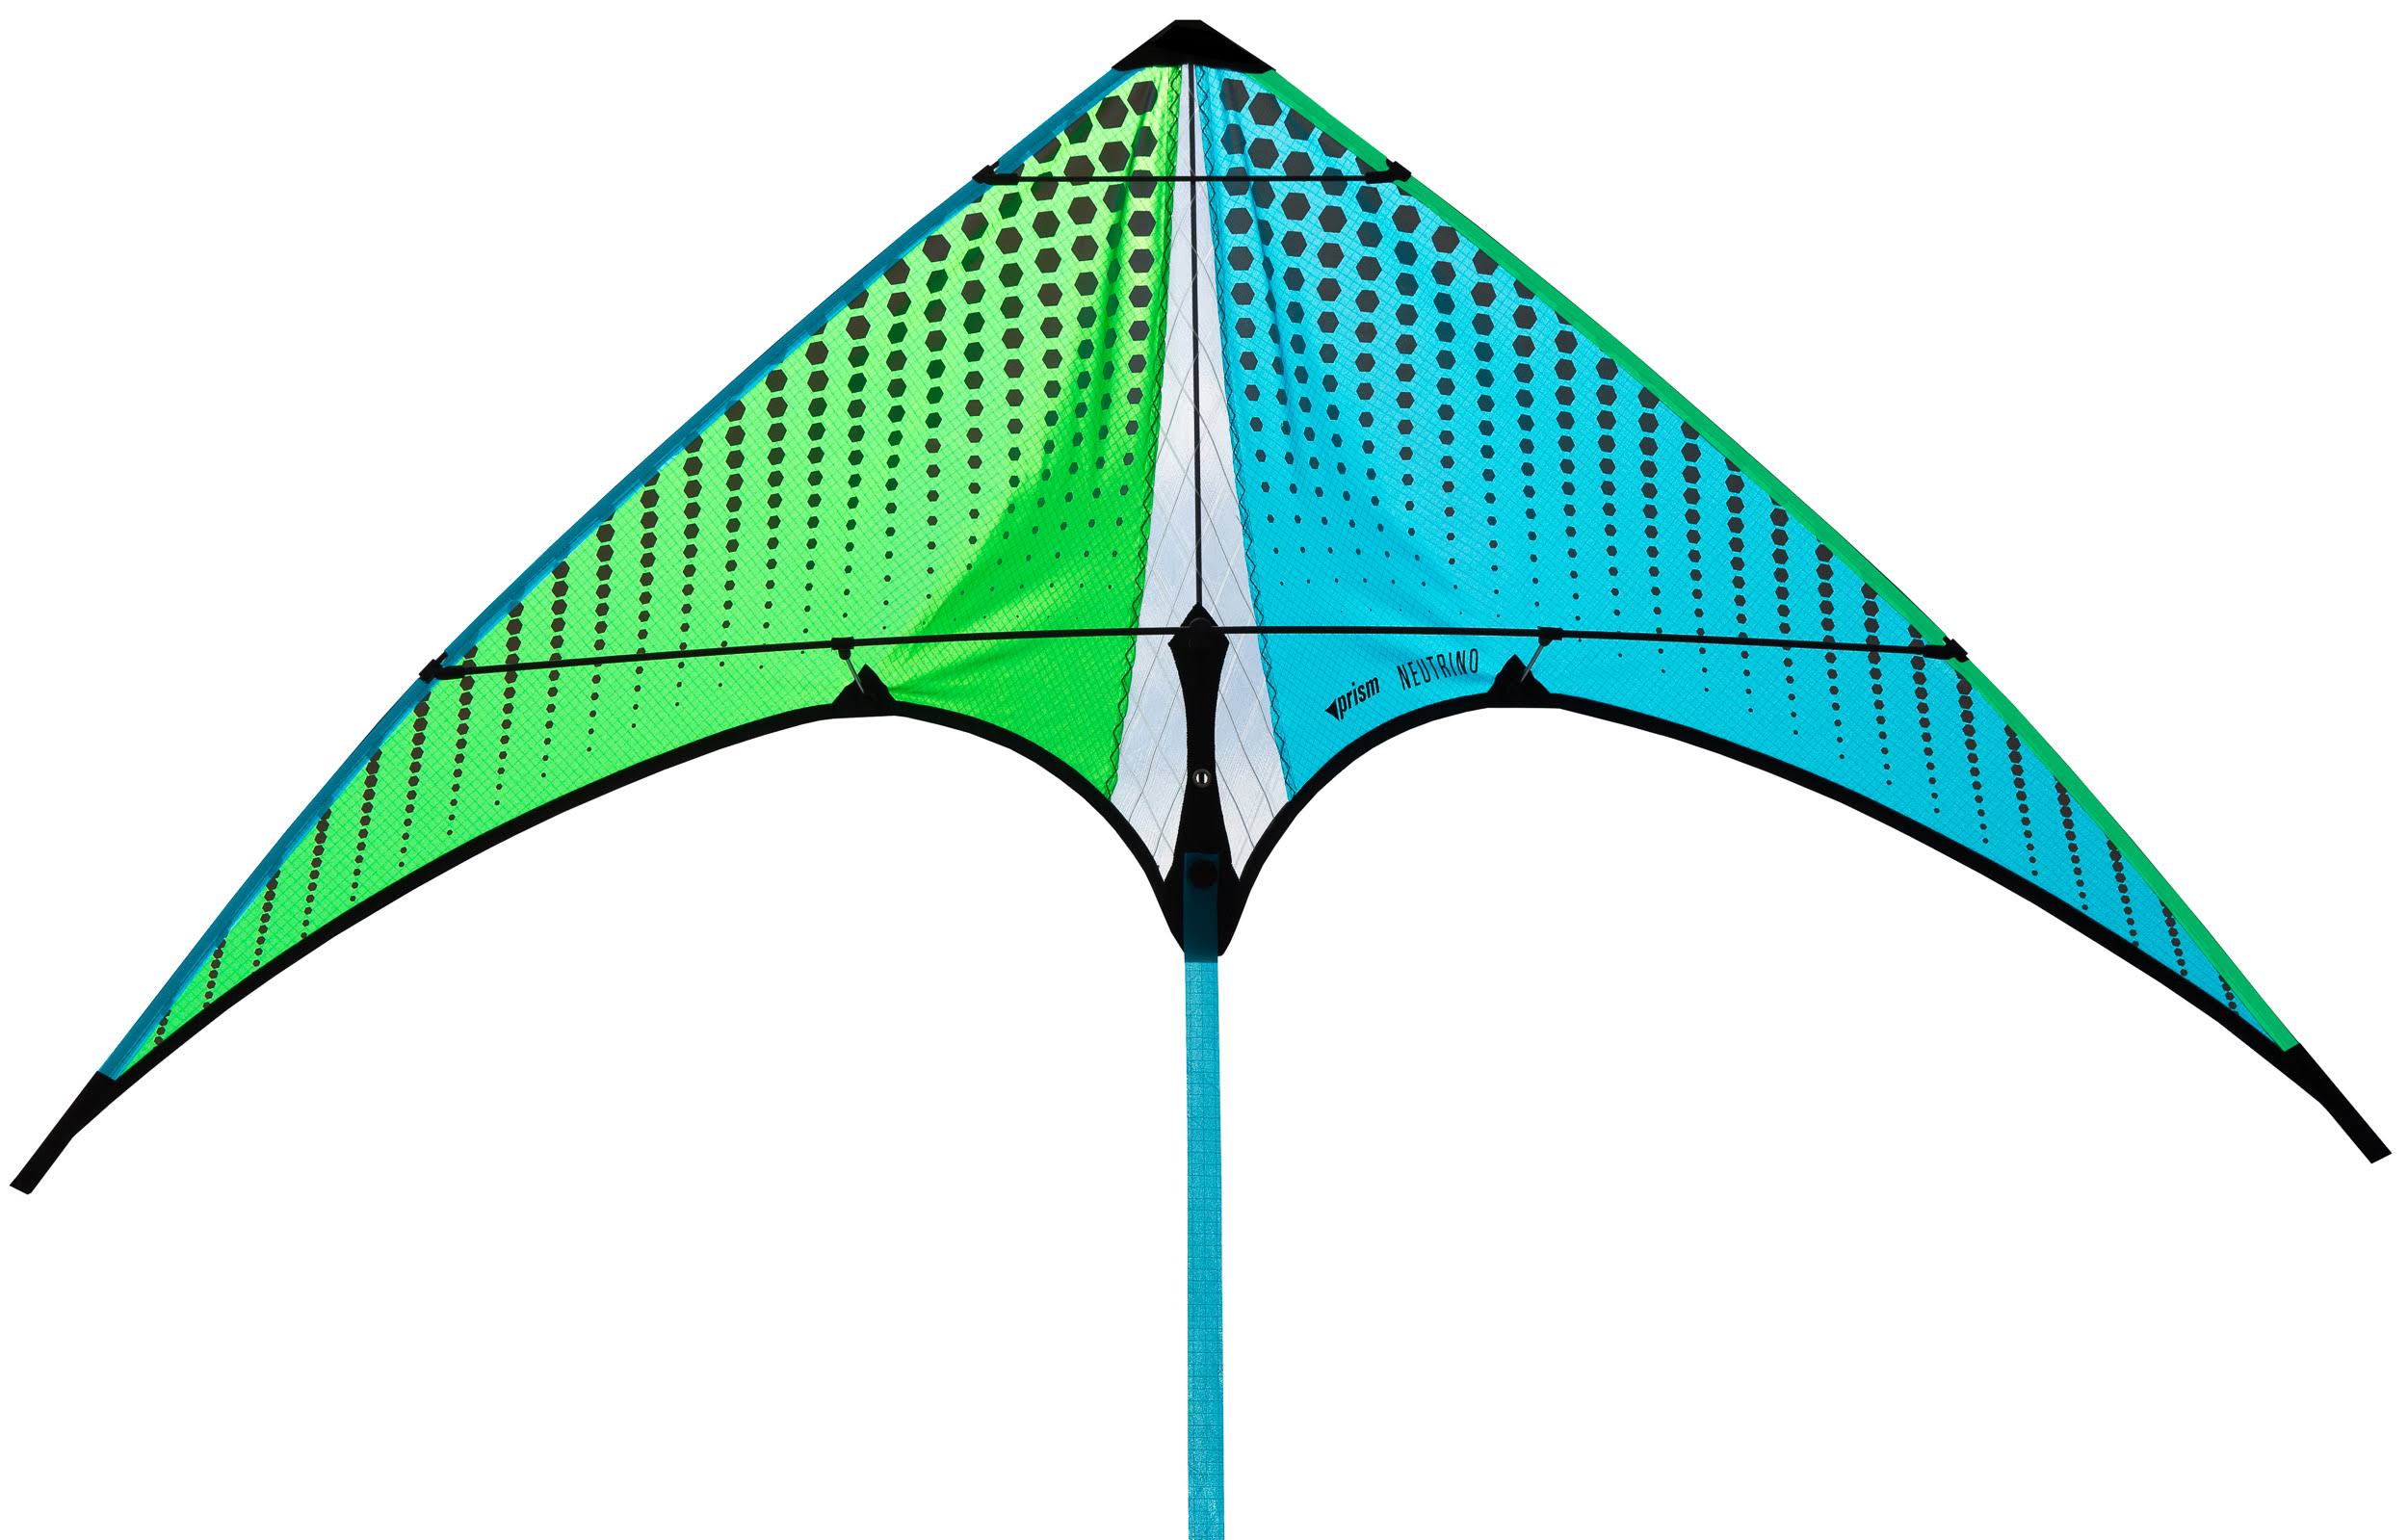 Prism Neutrino Mojito Kite Stunt Kite Green/Blue